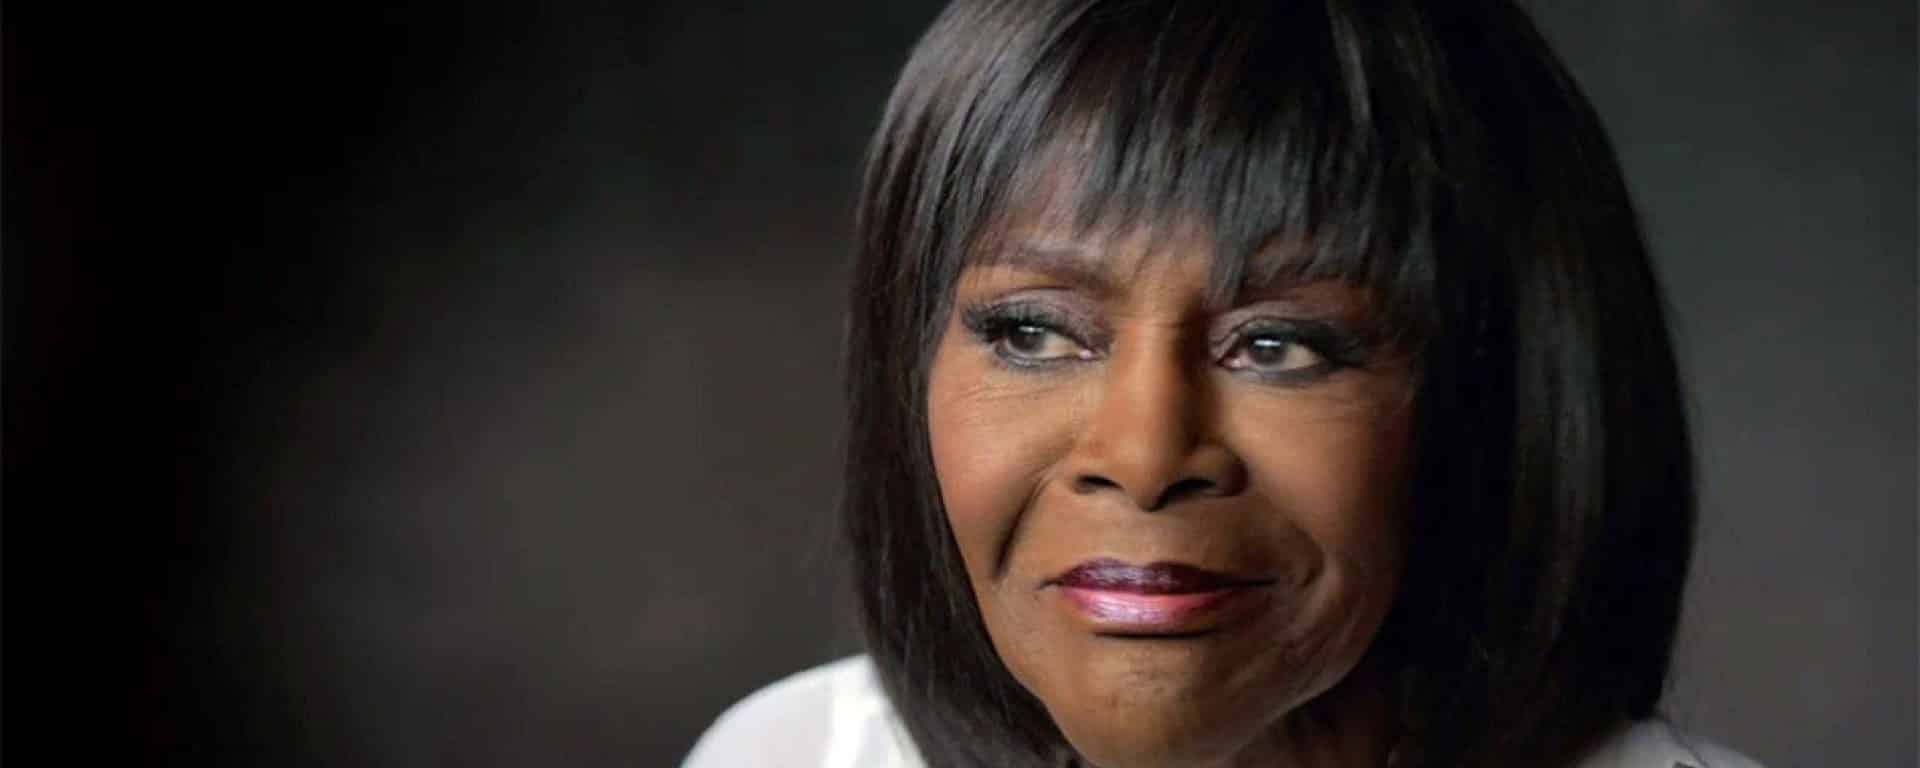 Oscar 2019: Cicely Tyson è la prima nera a vincere il premio alla carriera